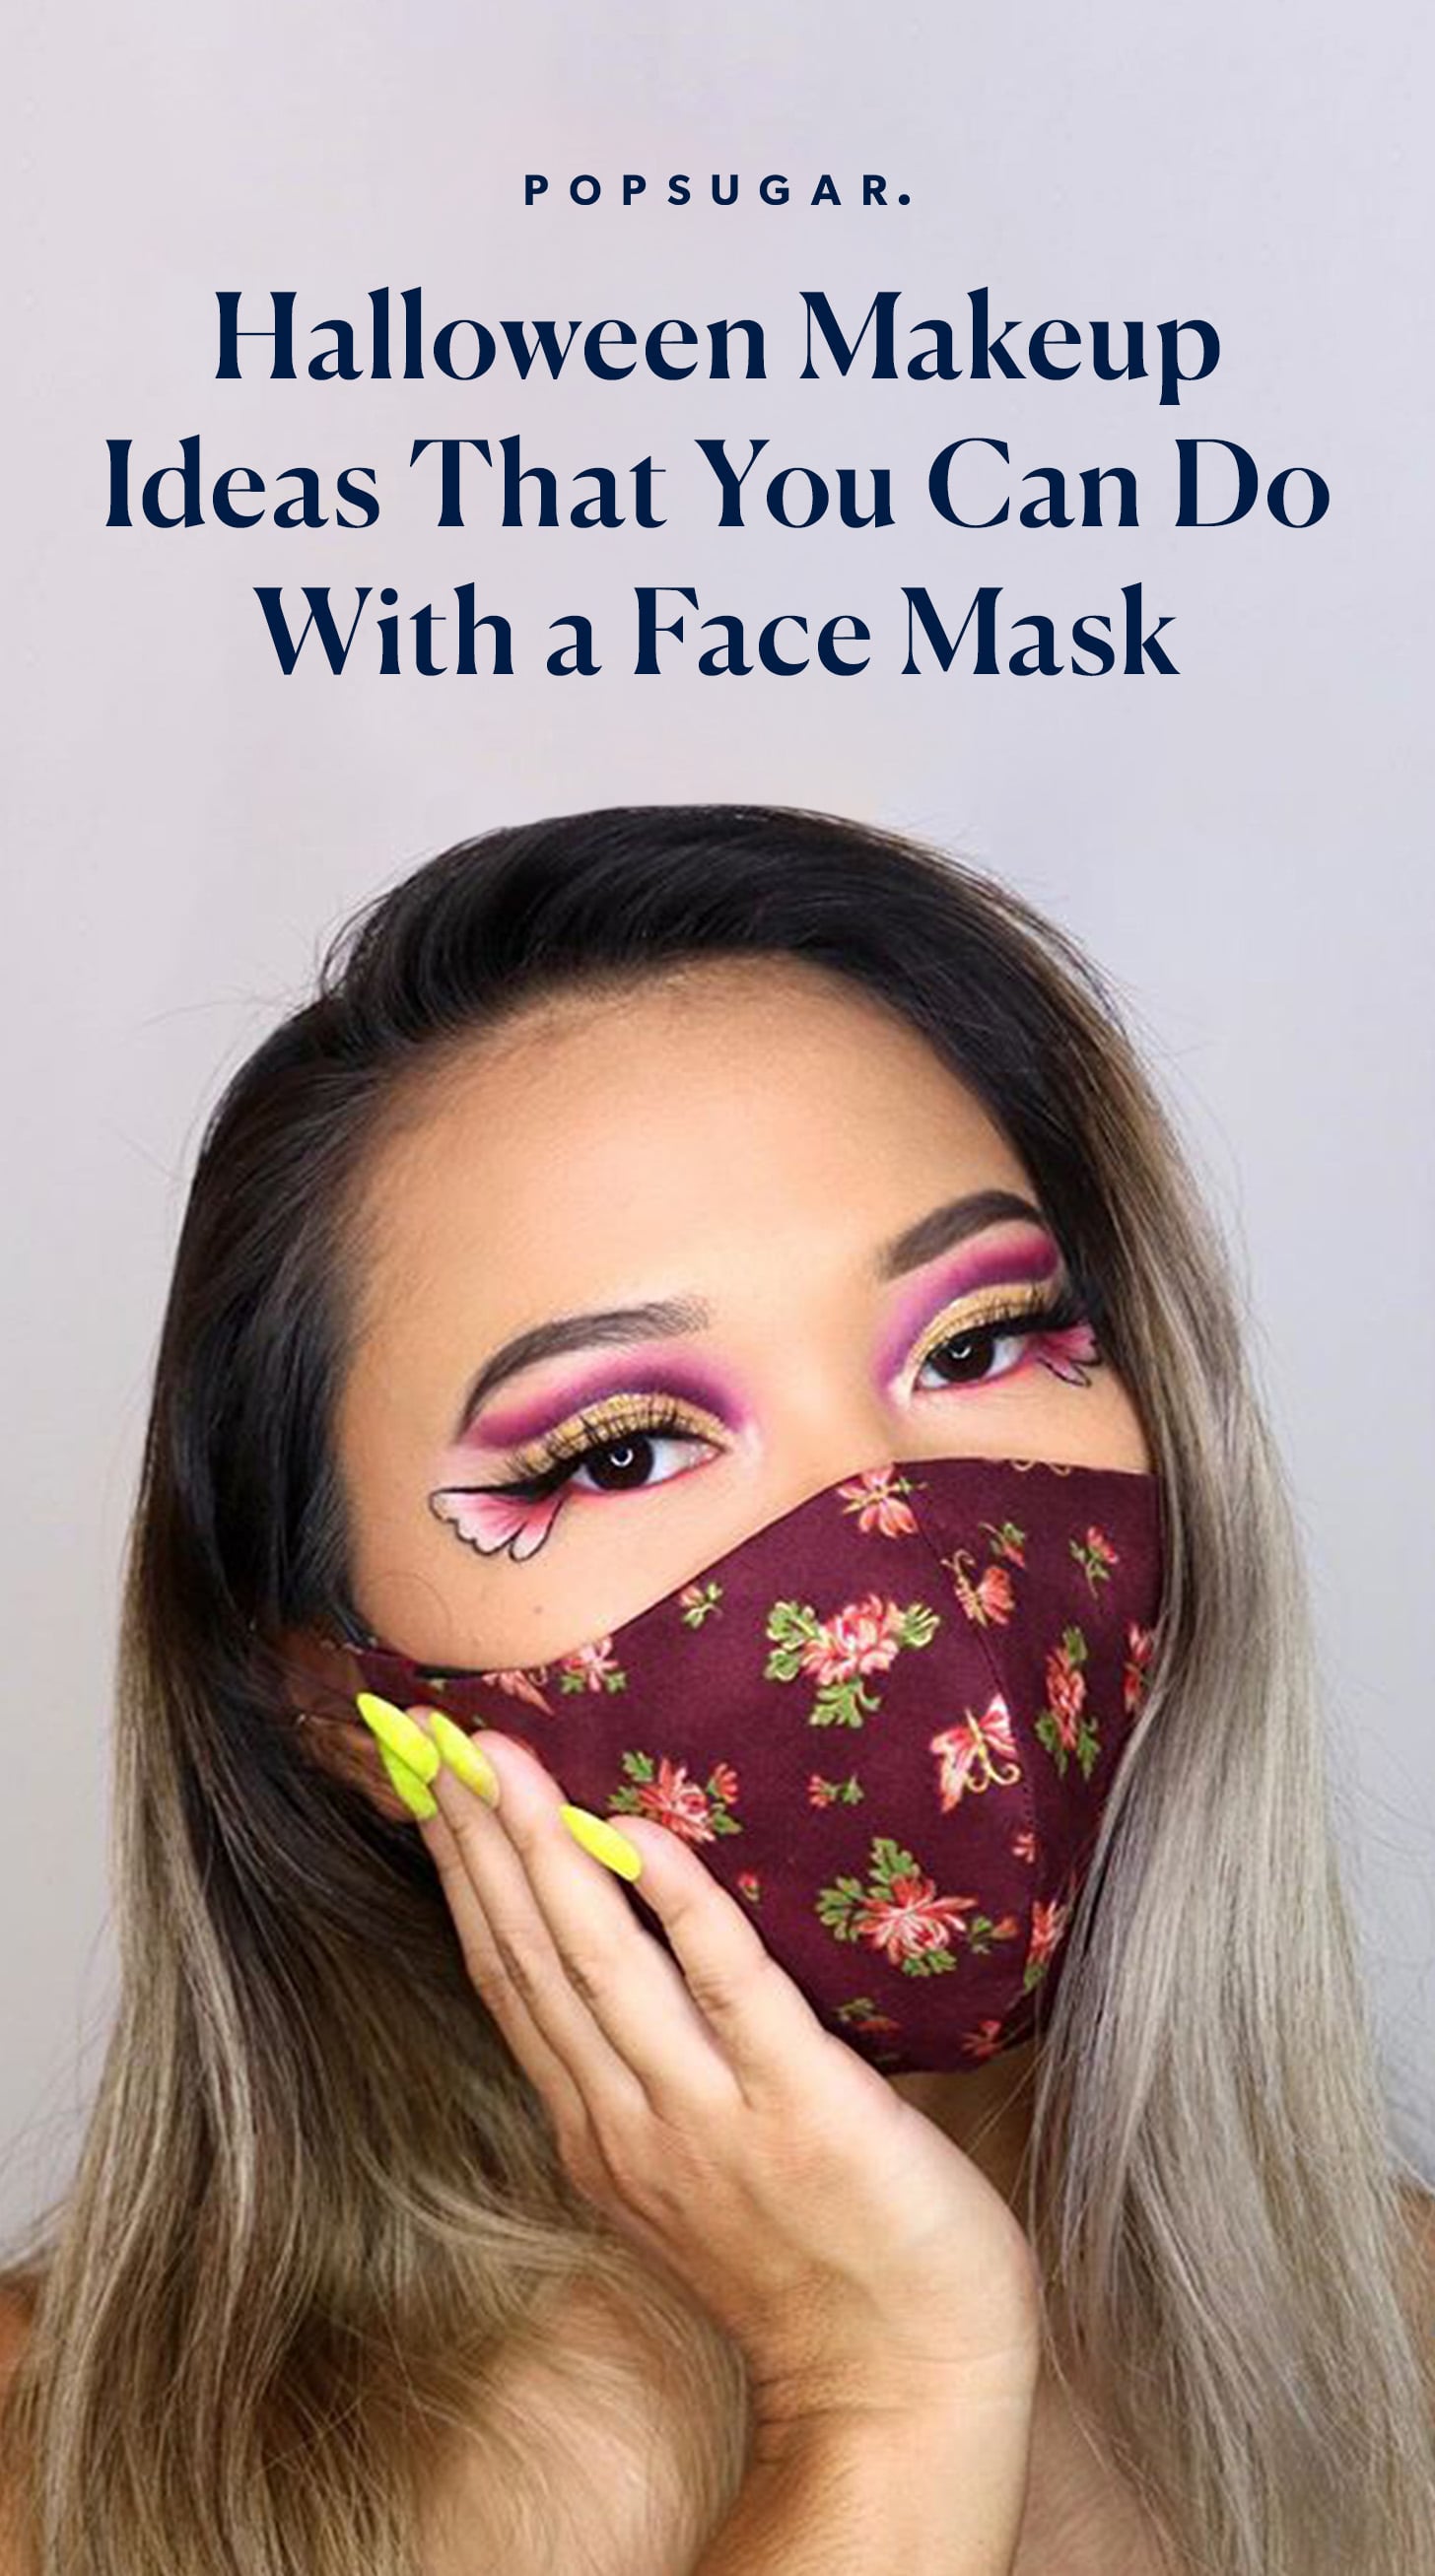 Princess makeup kit | Halloween Costume| Face gems | Face glitter gel